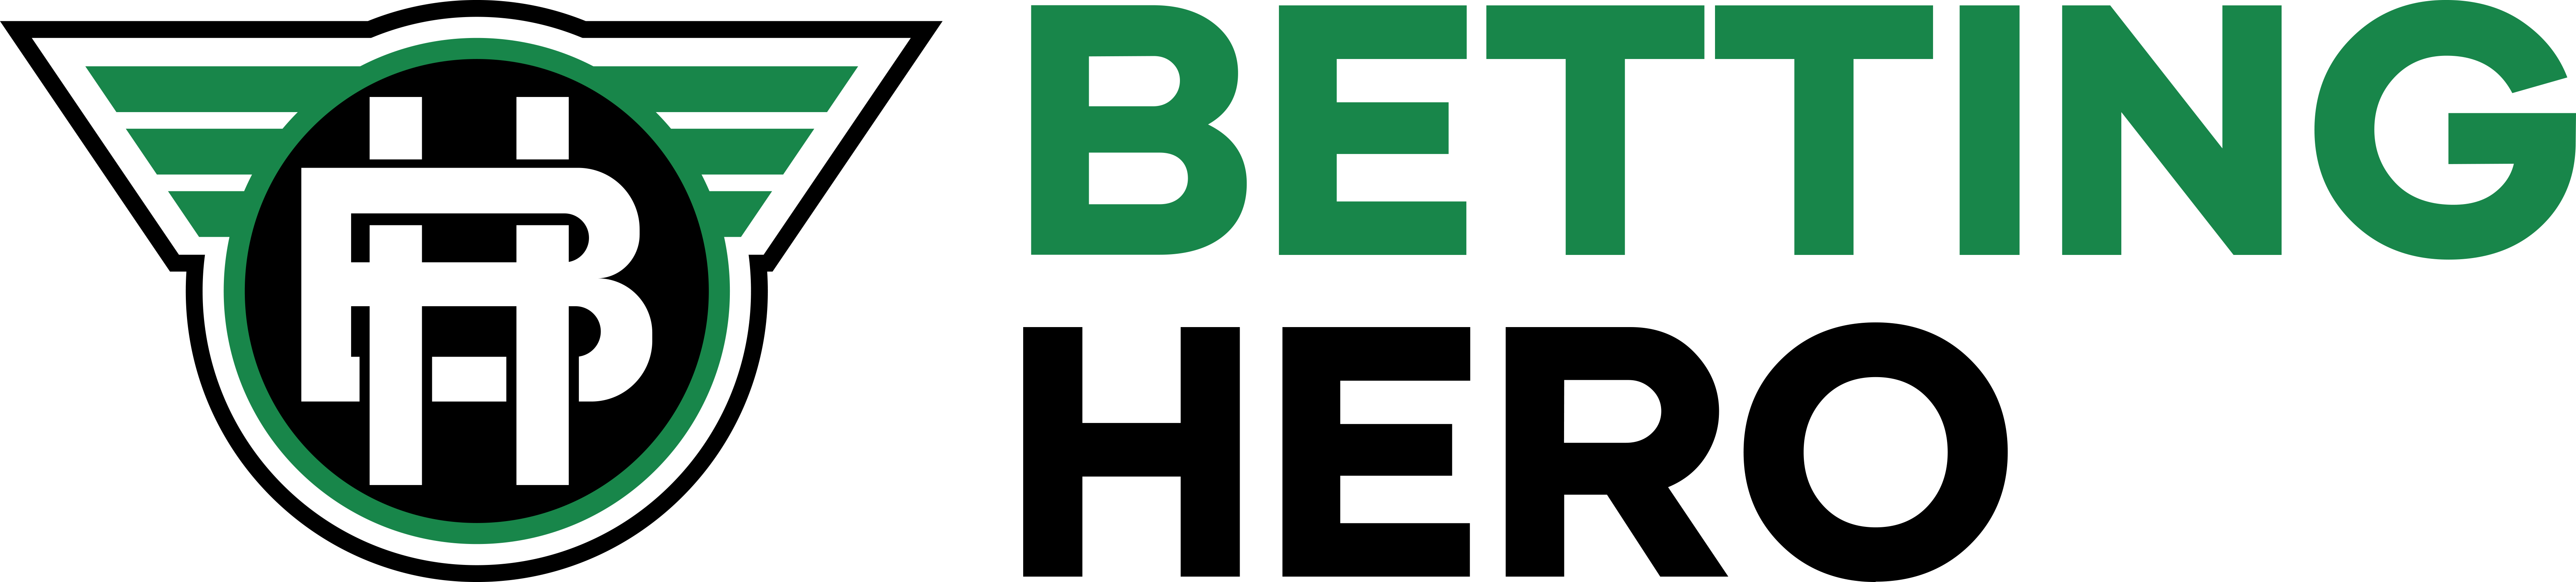 betting hero logo